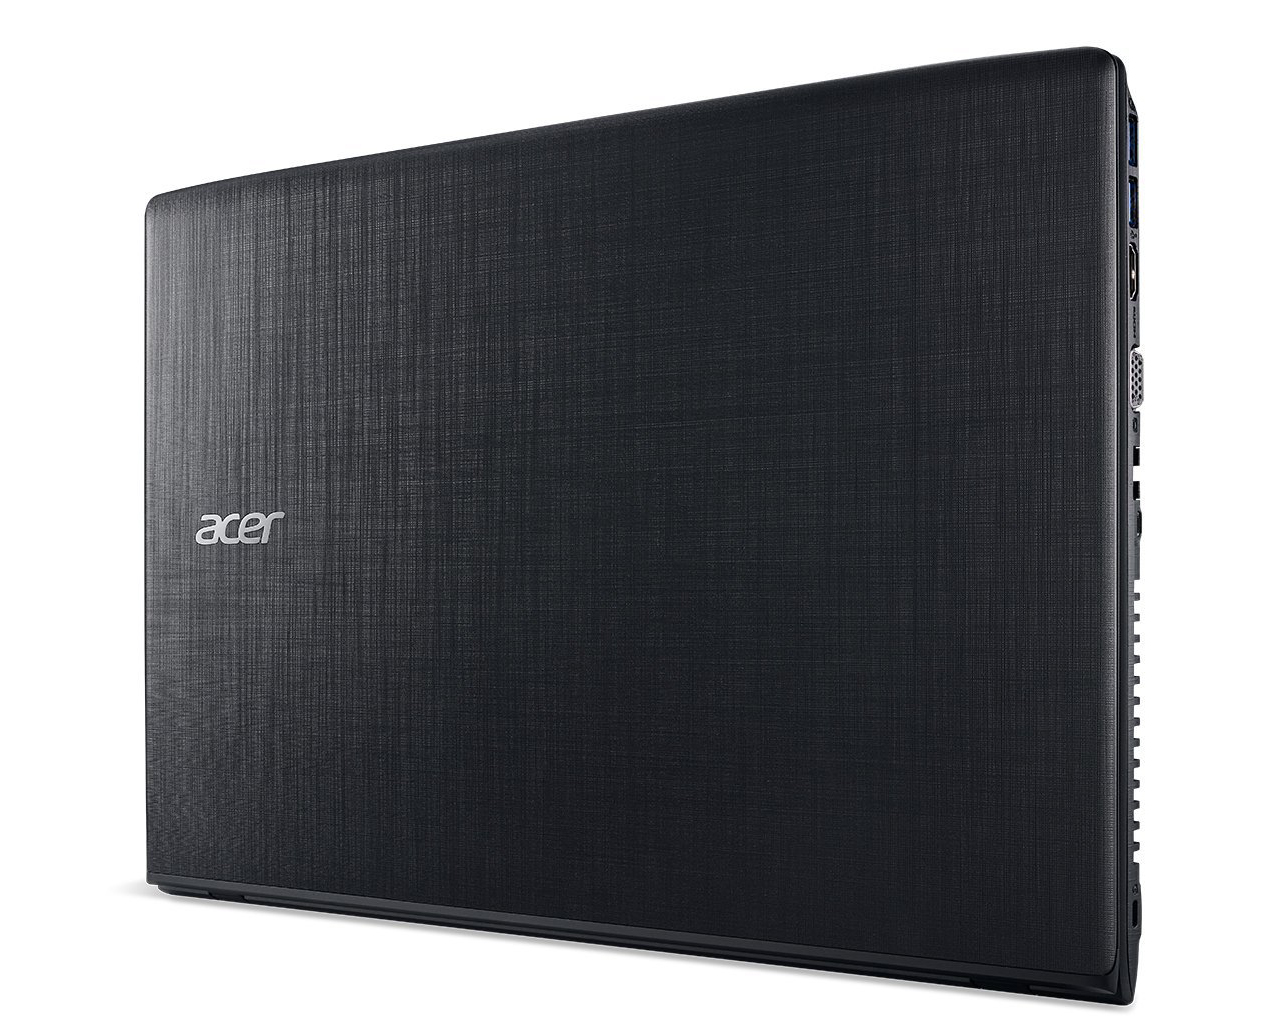 Acer Aspire E15 E5-576G-5762